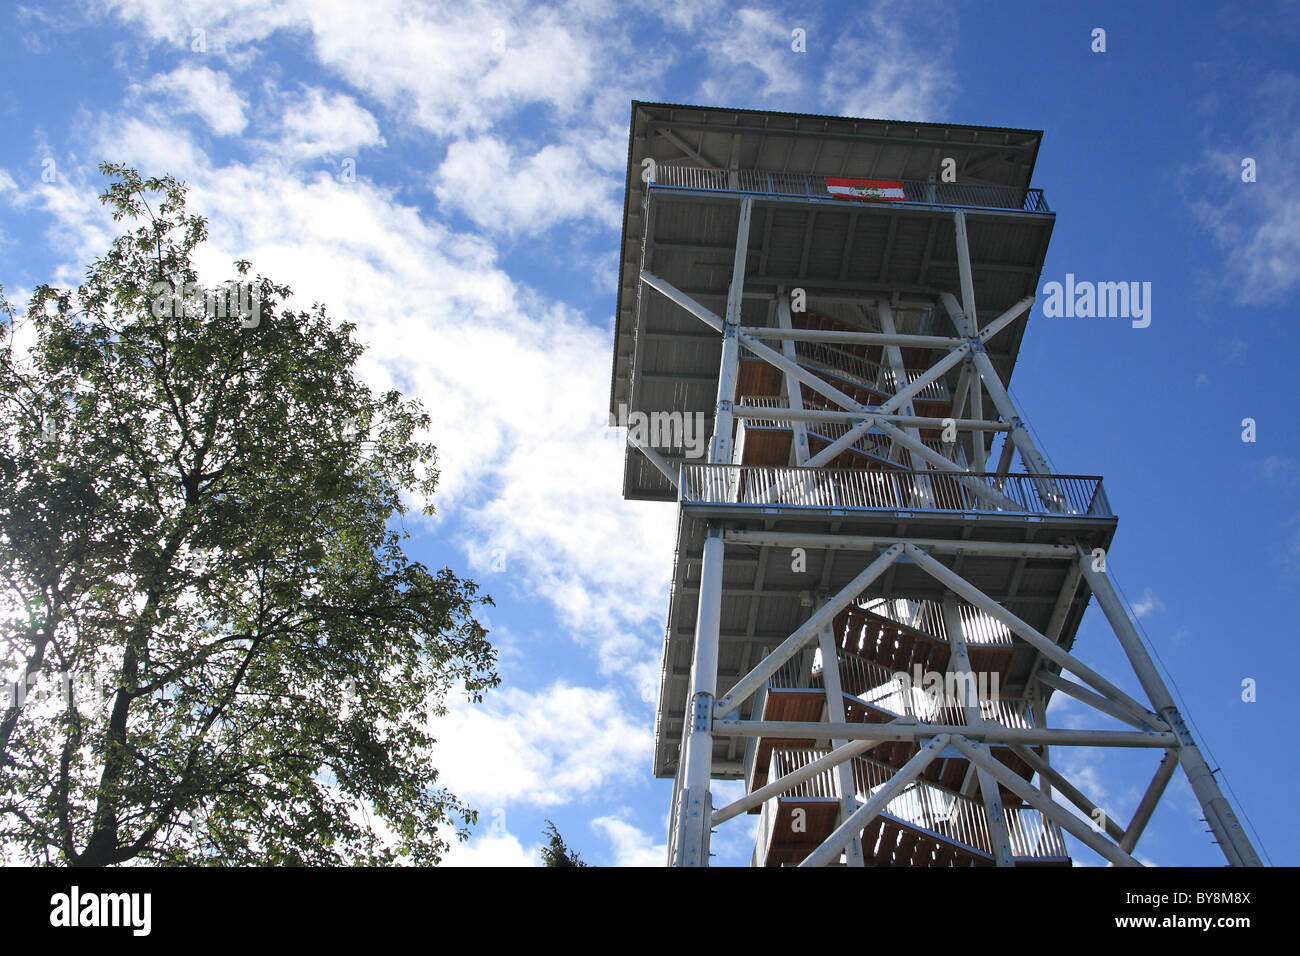 Wildlife observation tower in Wdzydze Kiszewskie, Kashubia, Poland. Stock Photo